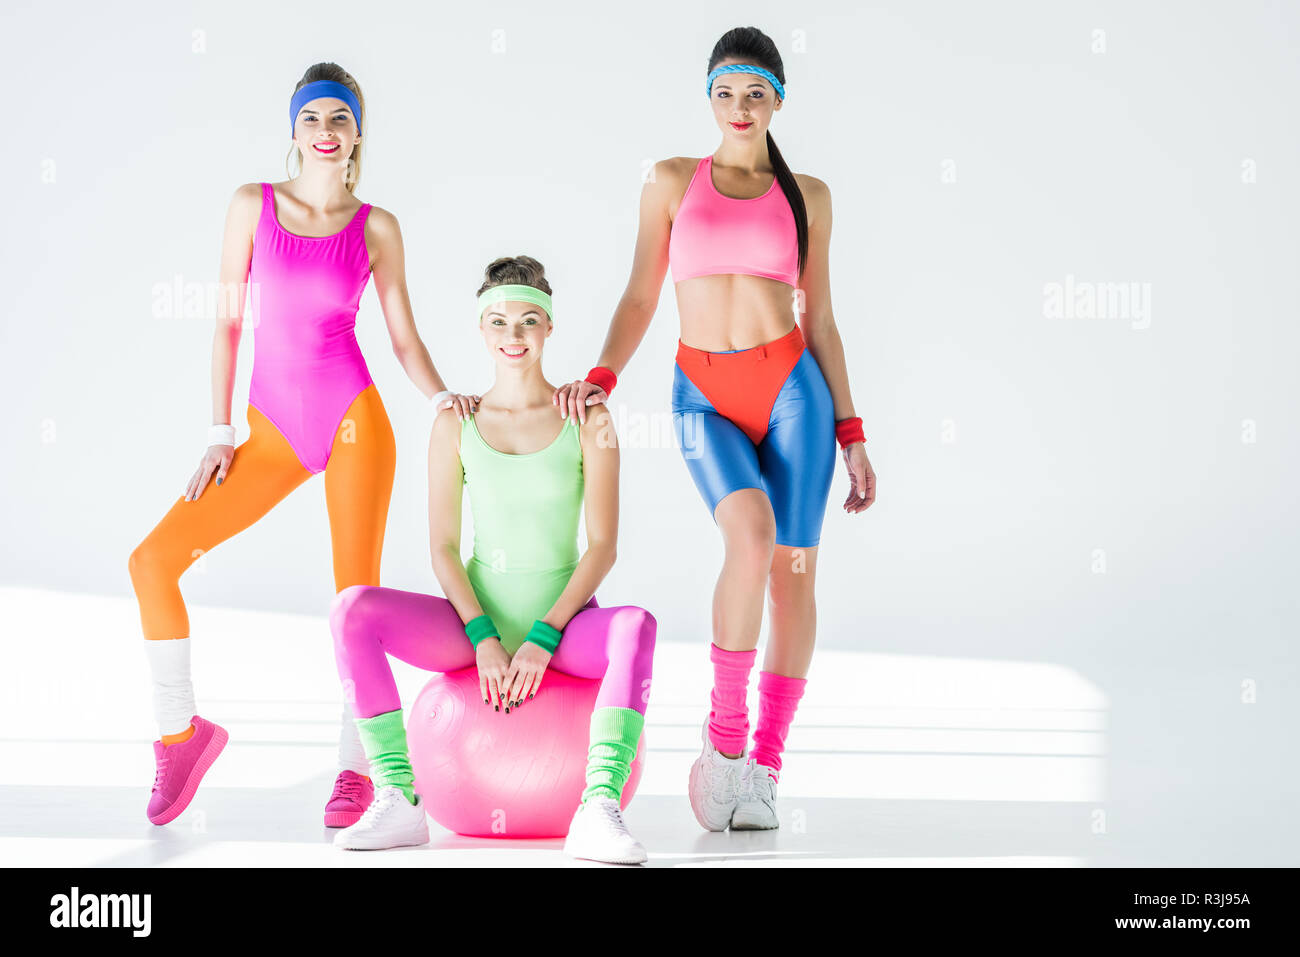 Athletische junge Frauen im 80er Jahre Stil Sportswear an Kamera lächelnd  auf Grau Stockfotografie - Alamy